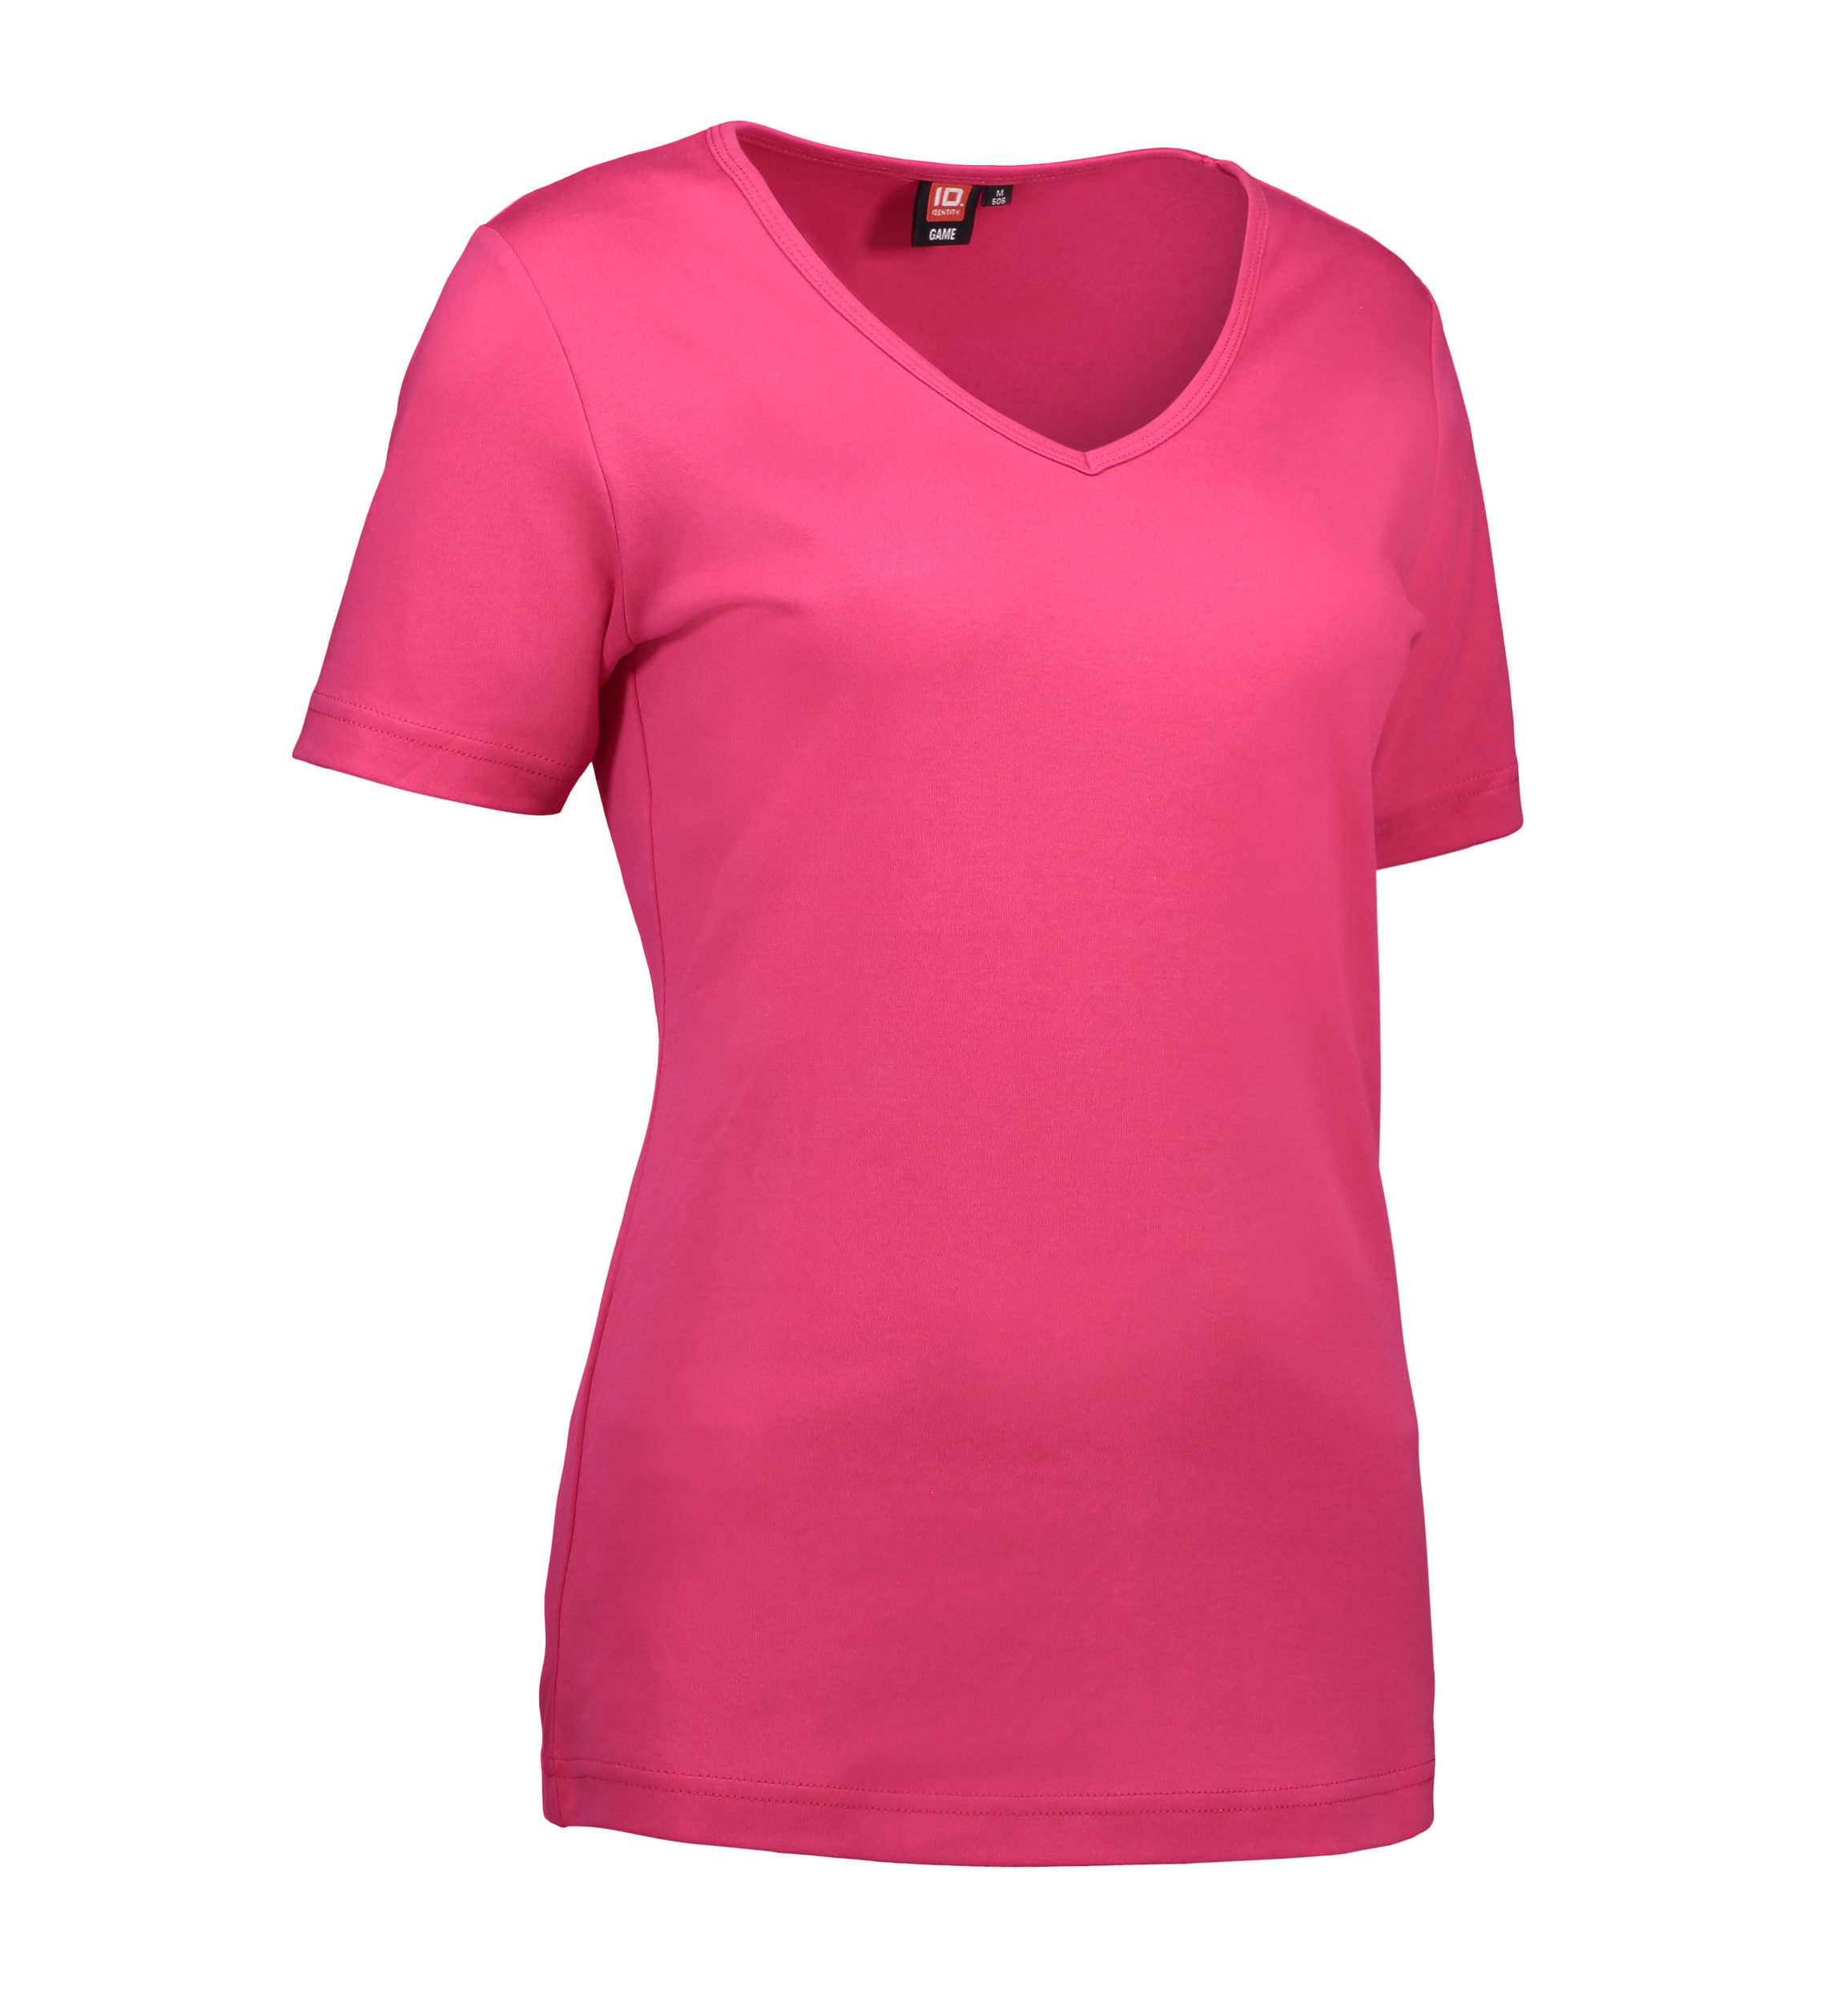 Billede af Pink dame t-shirt med v-hals - M hos Sygeplejebutikken.dk